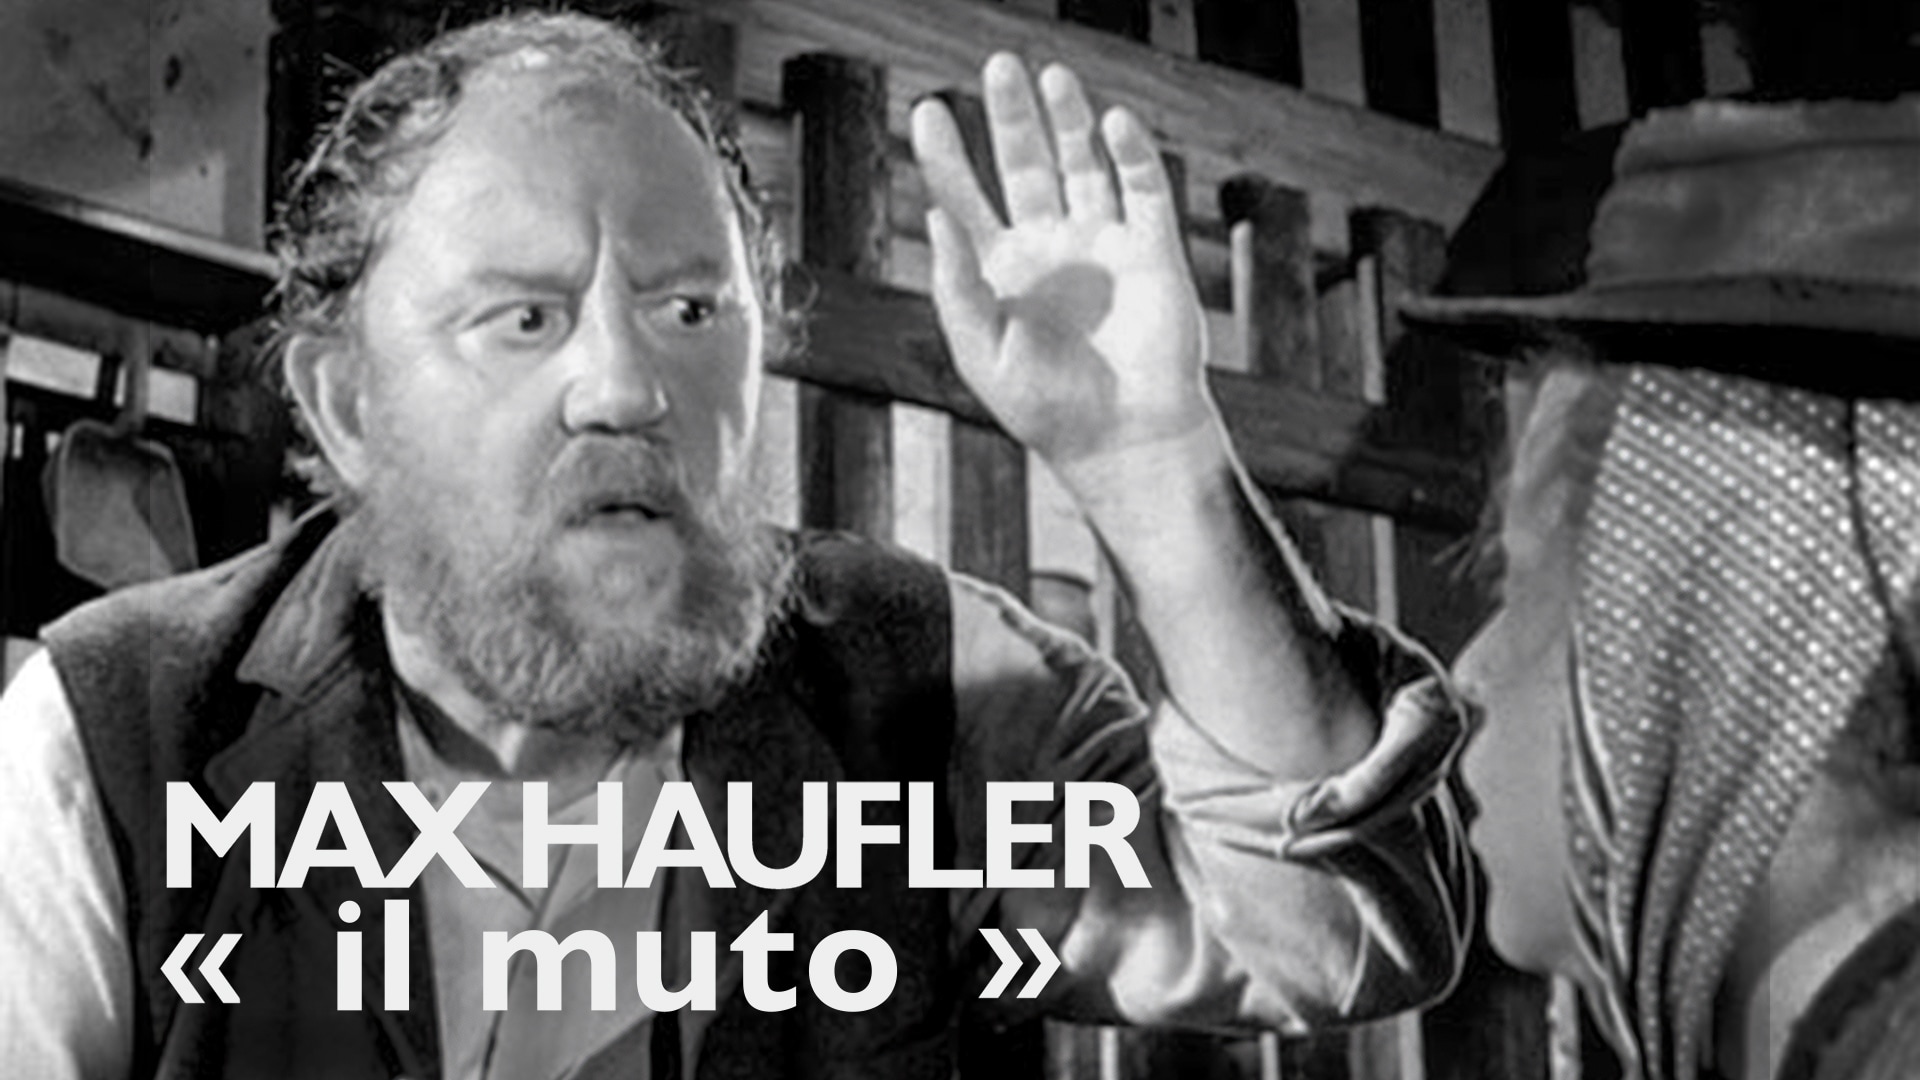 Max Haufler, "il muto"